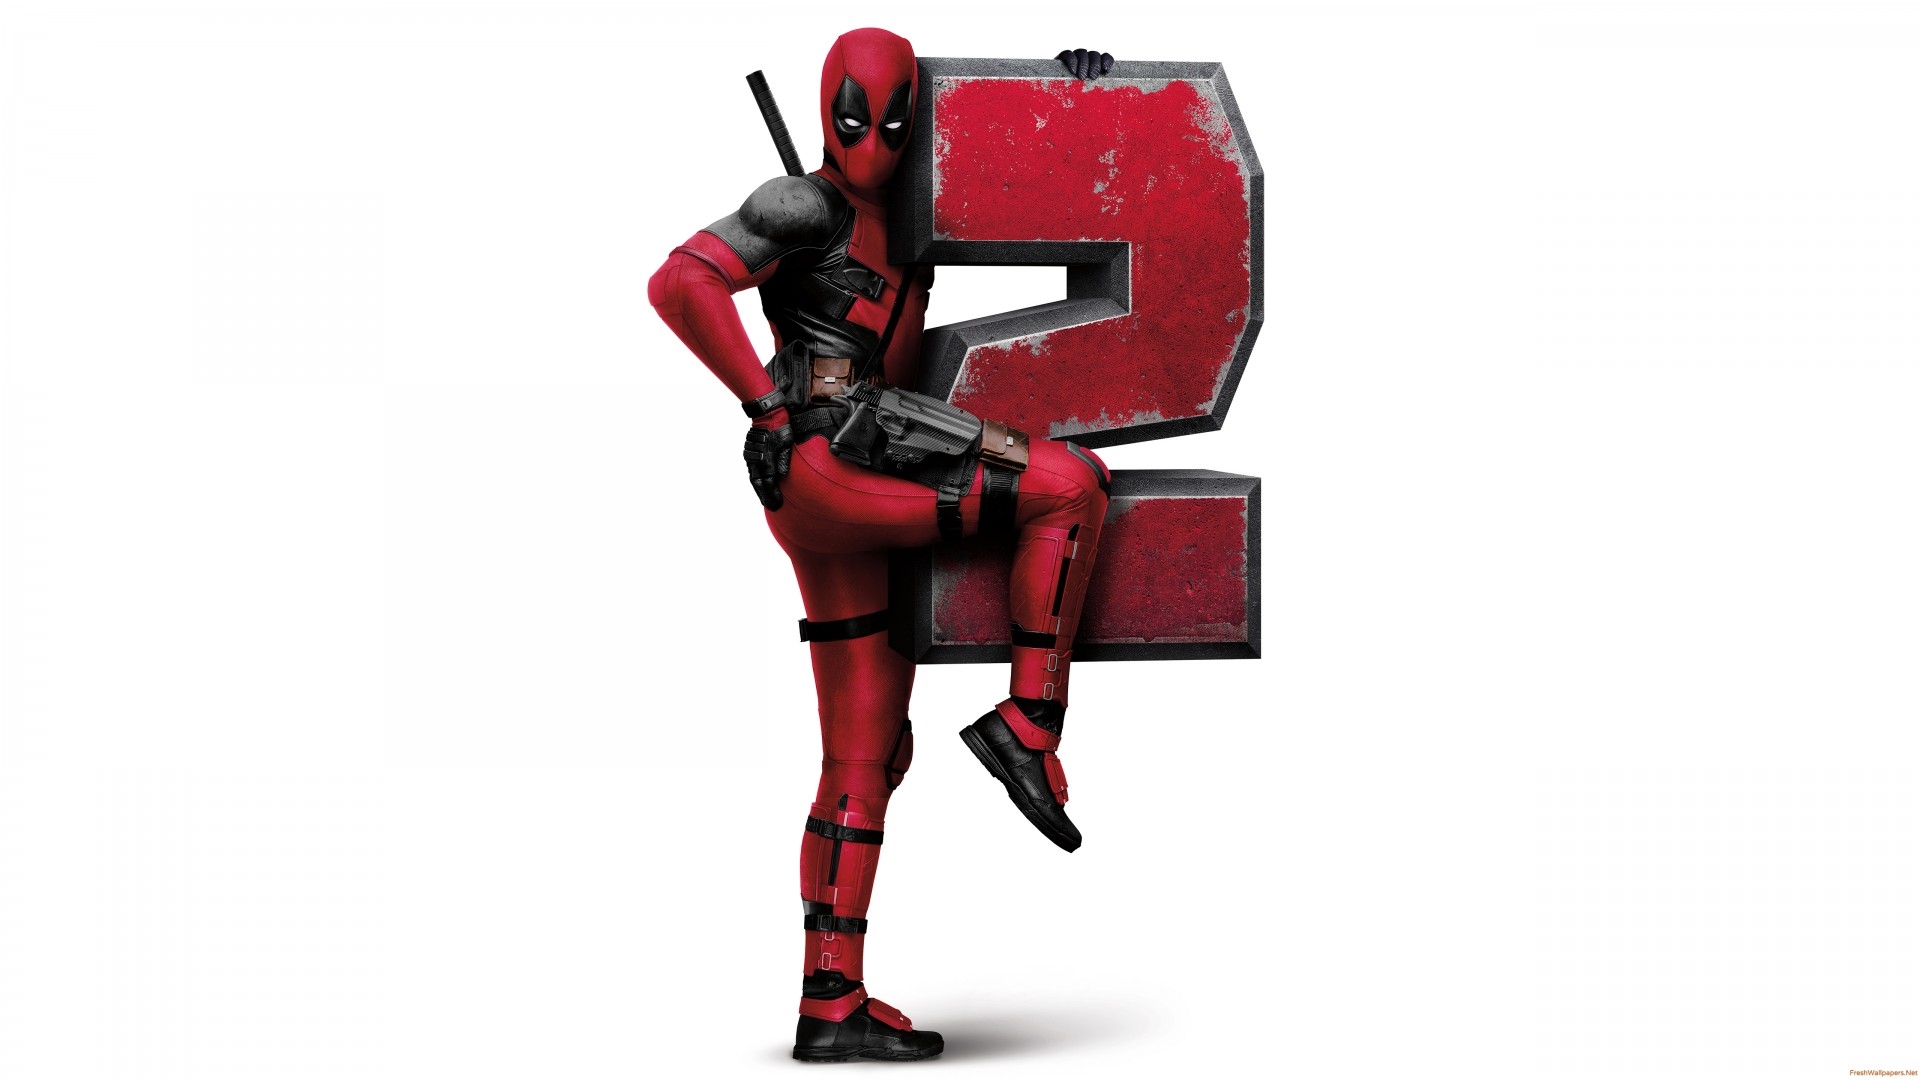 Mặc kệ Ryan Reynolds, biên kịch nhá hàng cho Deadpool 3!